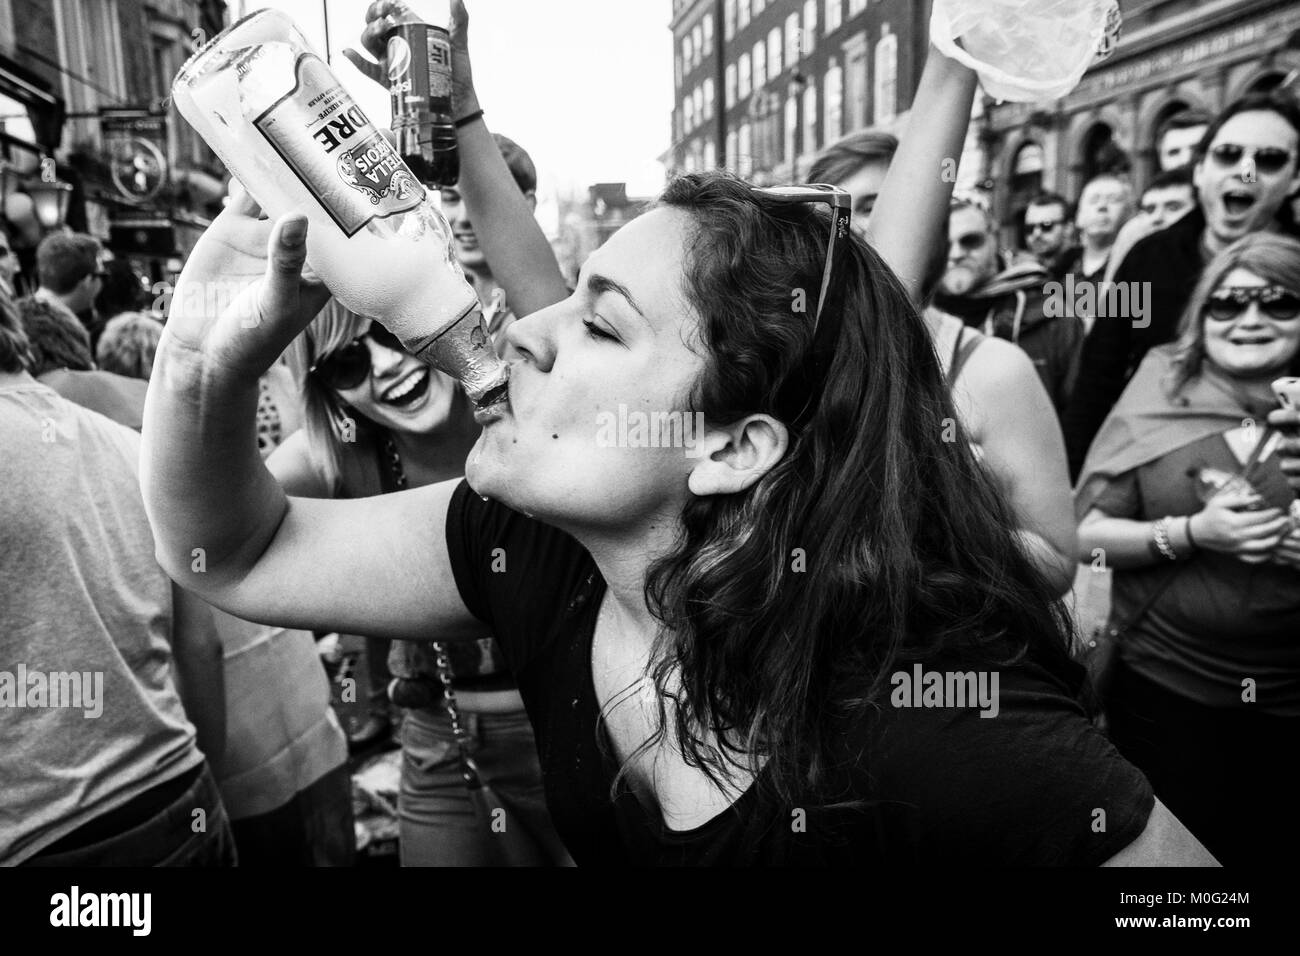 London fotografia di strada bianca e nera: Giovane donna acclamata dalla folla mentre beve dalla bottiglia alla festa di strada. Foto Stock